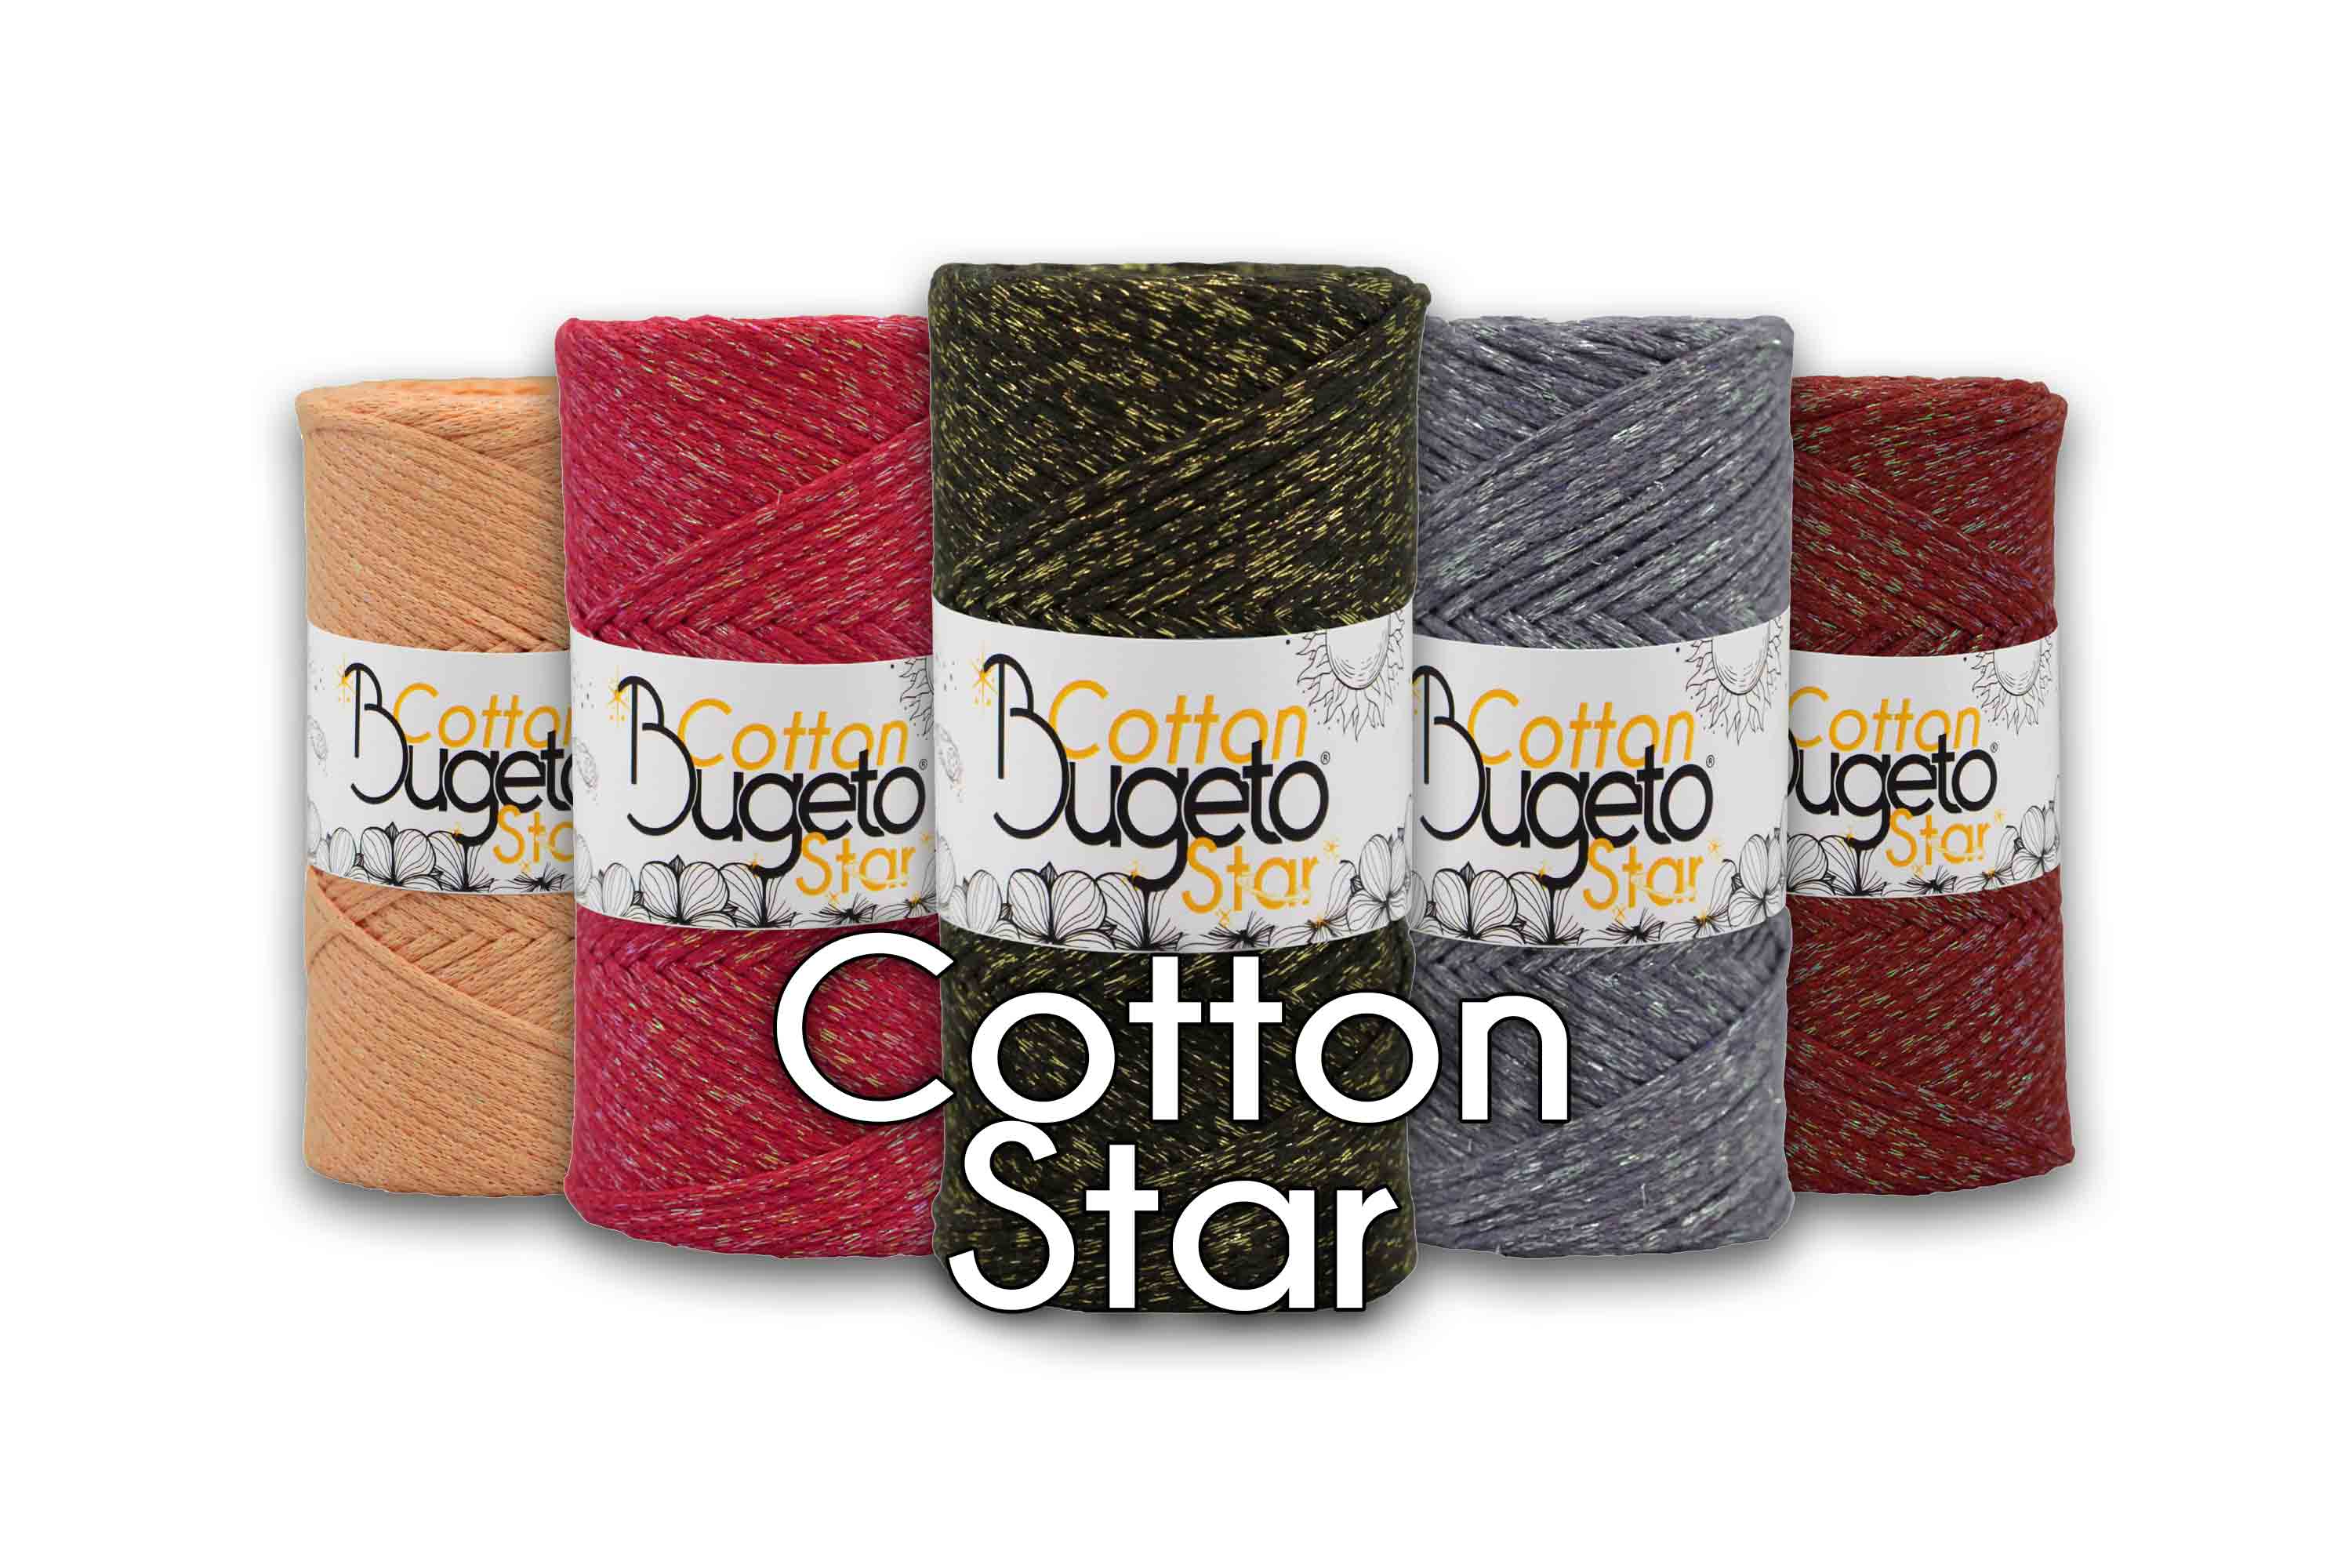 star yarn cotton yarn yarns shinny yarns bugeto yarn glitter cotton yarns